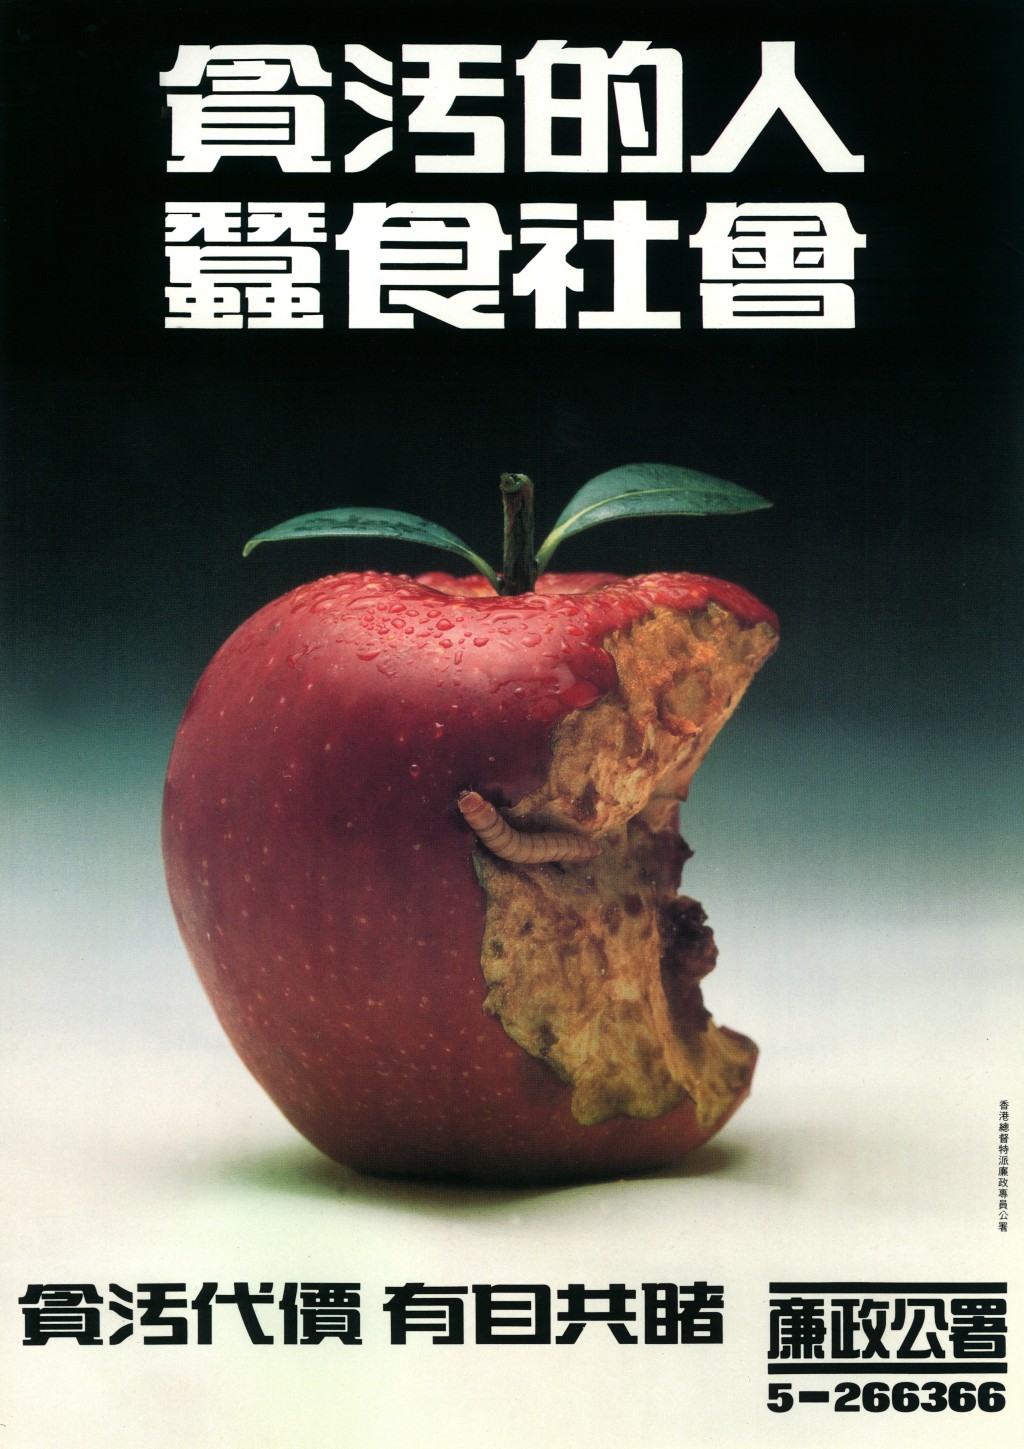 廉署广告中的《烂苹果》。廉署提供